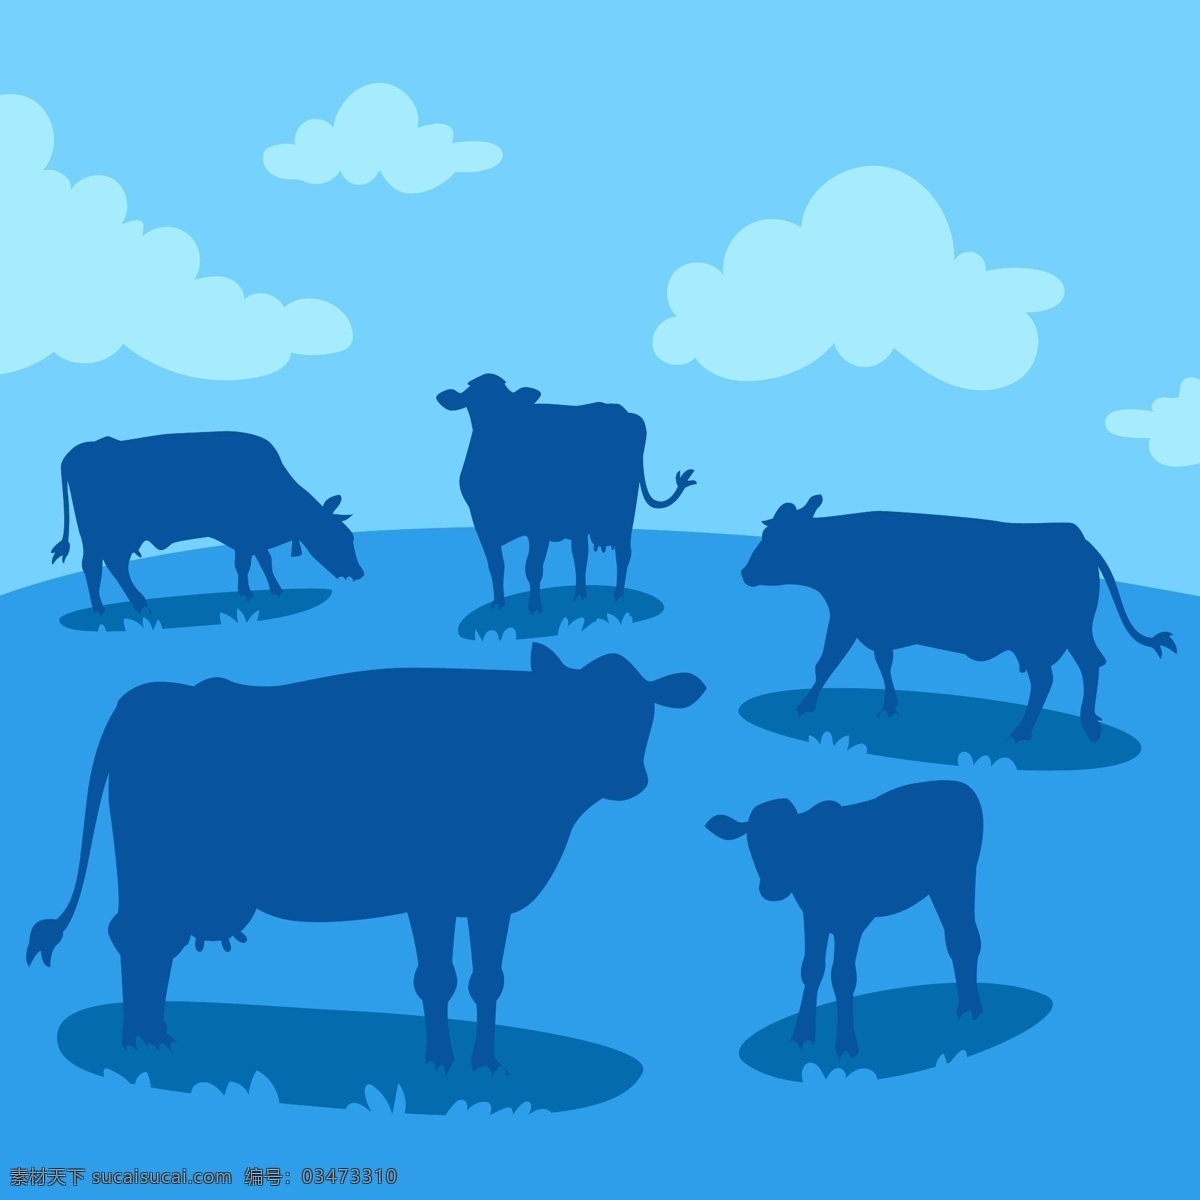 奶牛 设计素材 奶牛剪影 蓝天白云 草场 农场 牛奶 背景图片 可爱的小牛 草原 牧场风景 大自然 动物高清 生物世界 家禽家畜